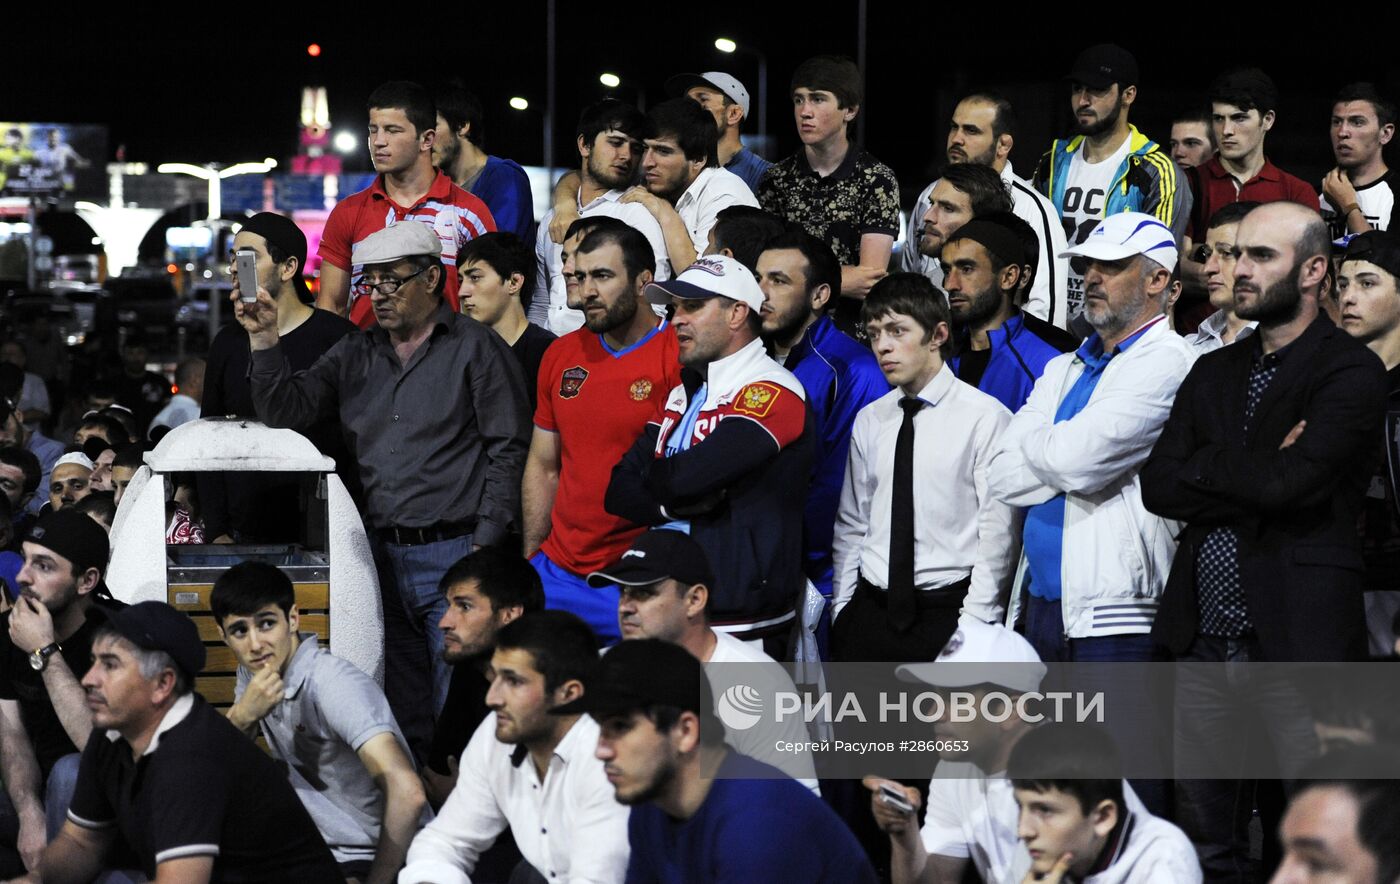 Встреча сборной Дагестана по вольной борьбе с чемпионата России